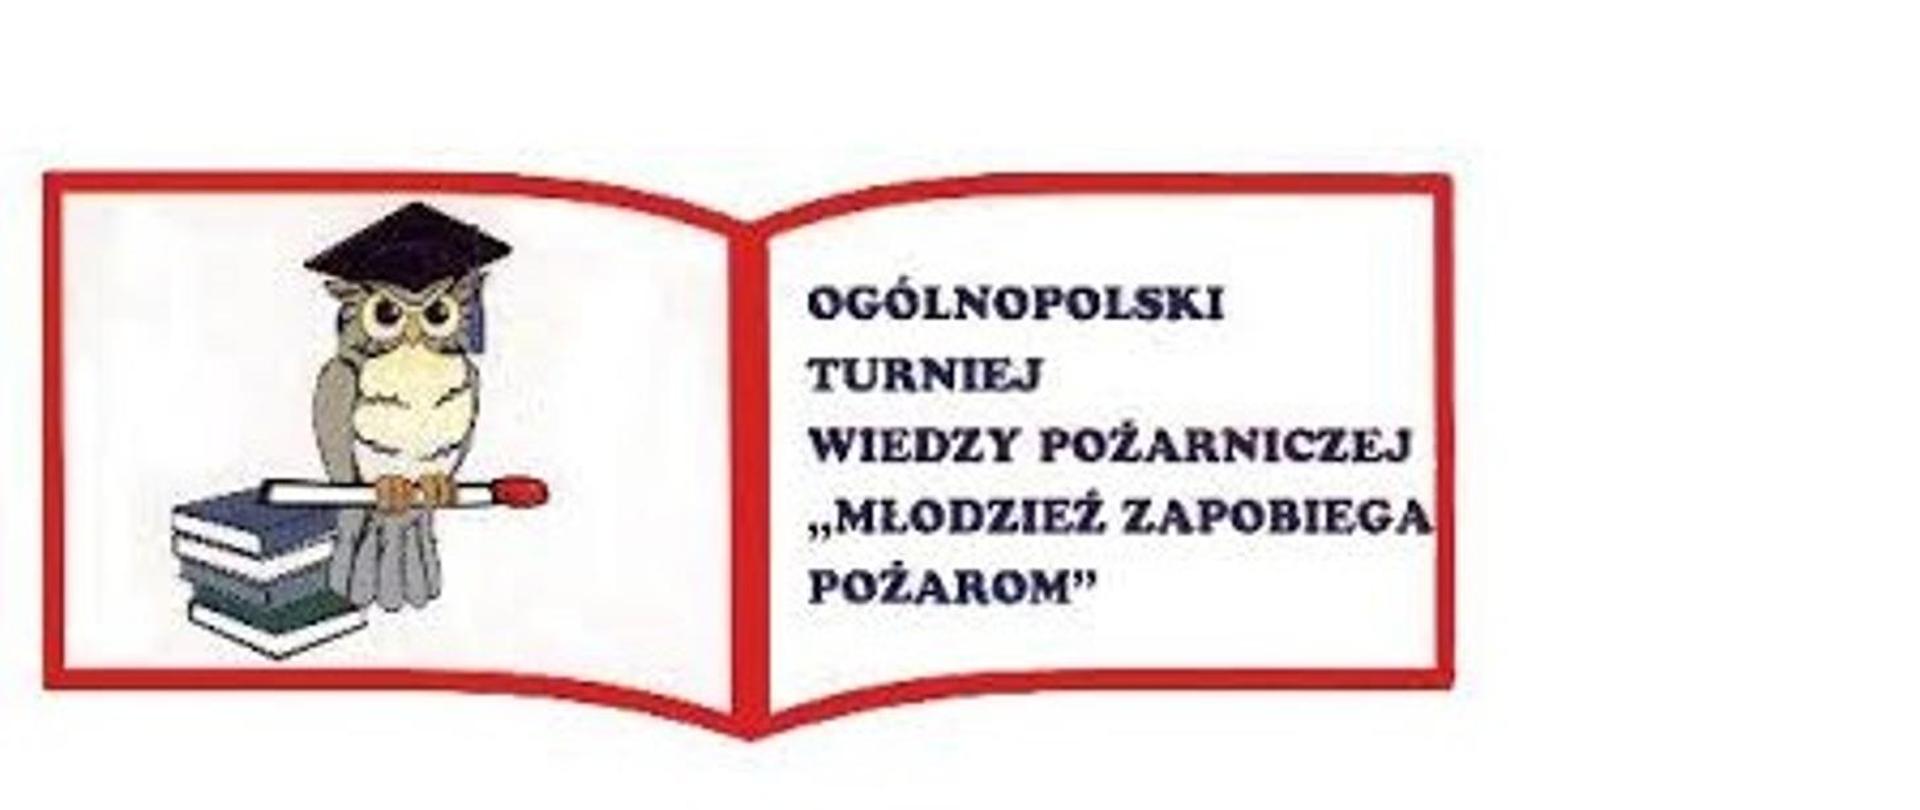 Zdjęcie ukazuje napis Ogólnopolski Turniej Wiedzy Pożarniczej, Młodzież Zapobiega Pożarom, na tle książki. Na książce znajduje się zwierzę sowa która ma czapkę studencką na głowie.